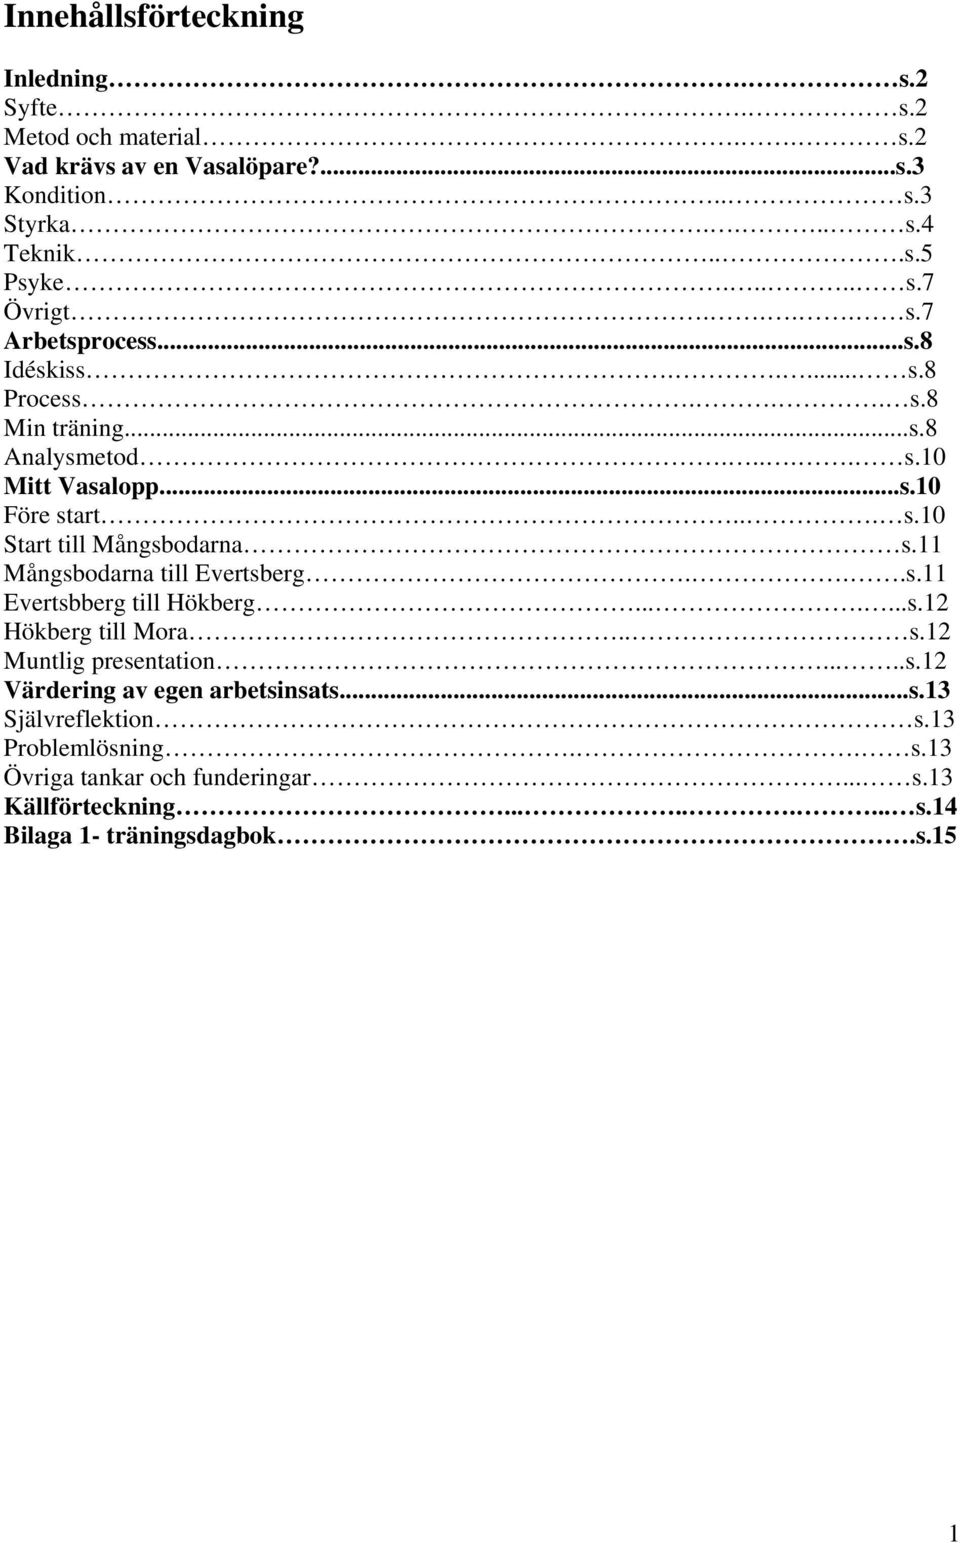 11 Mångsbodarna till Evertsberg...s.11 Evertsbberg till Hökberg.......s.12 Hökberg till Mora.. s.12 Muntlig presentation.....s.12 Värdering av egen arbetsinsats...s.13 Självreflektion s.